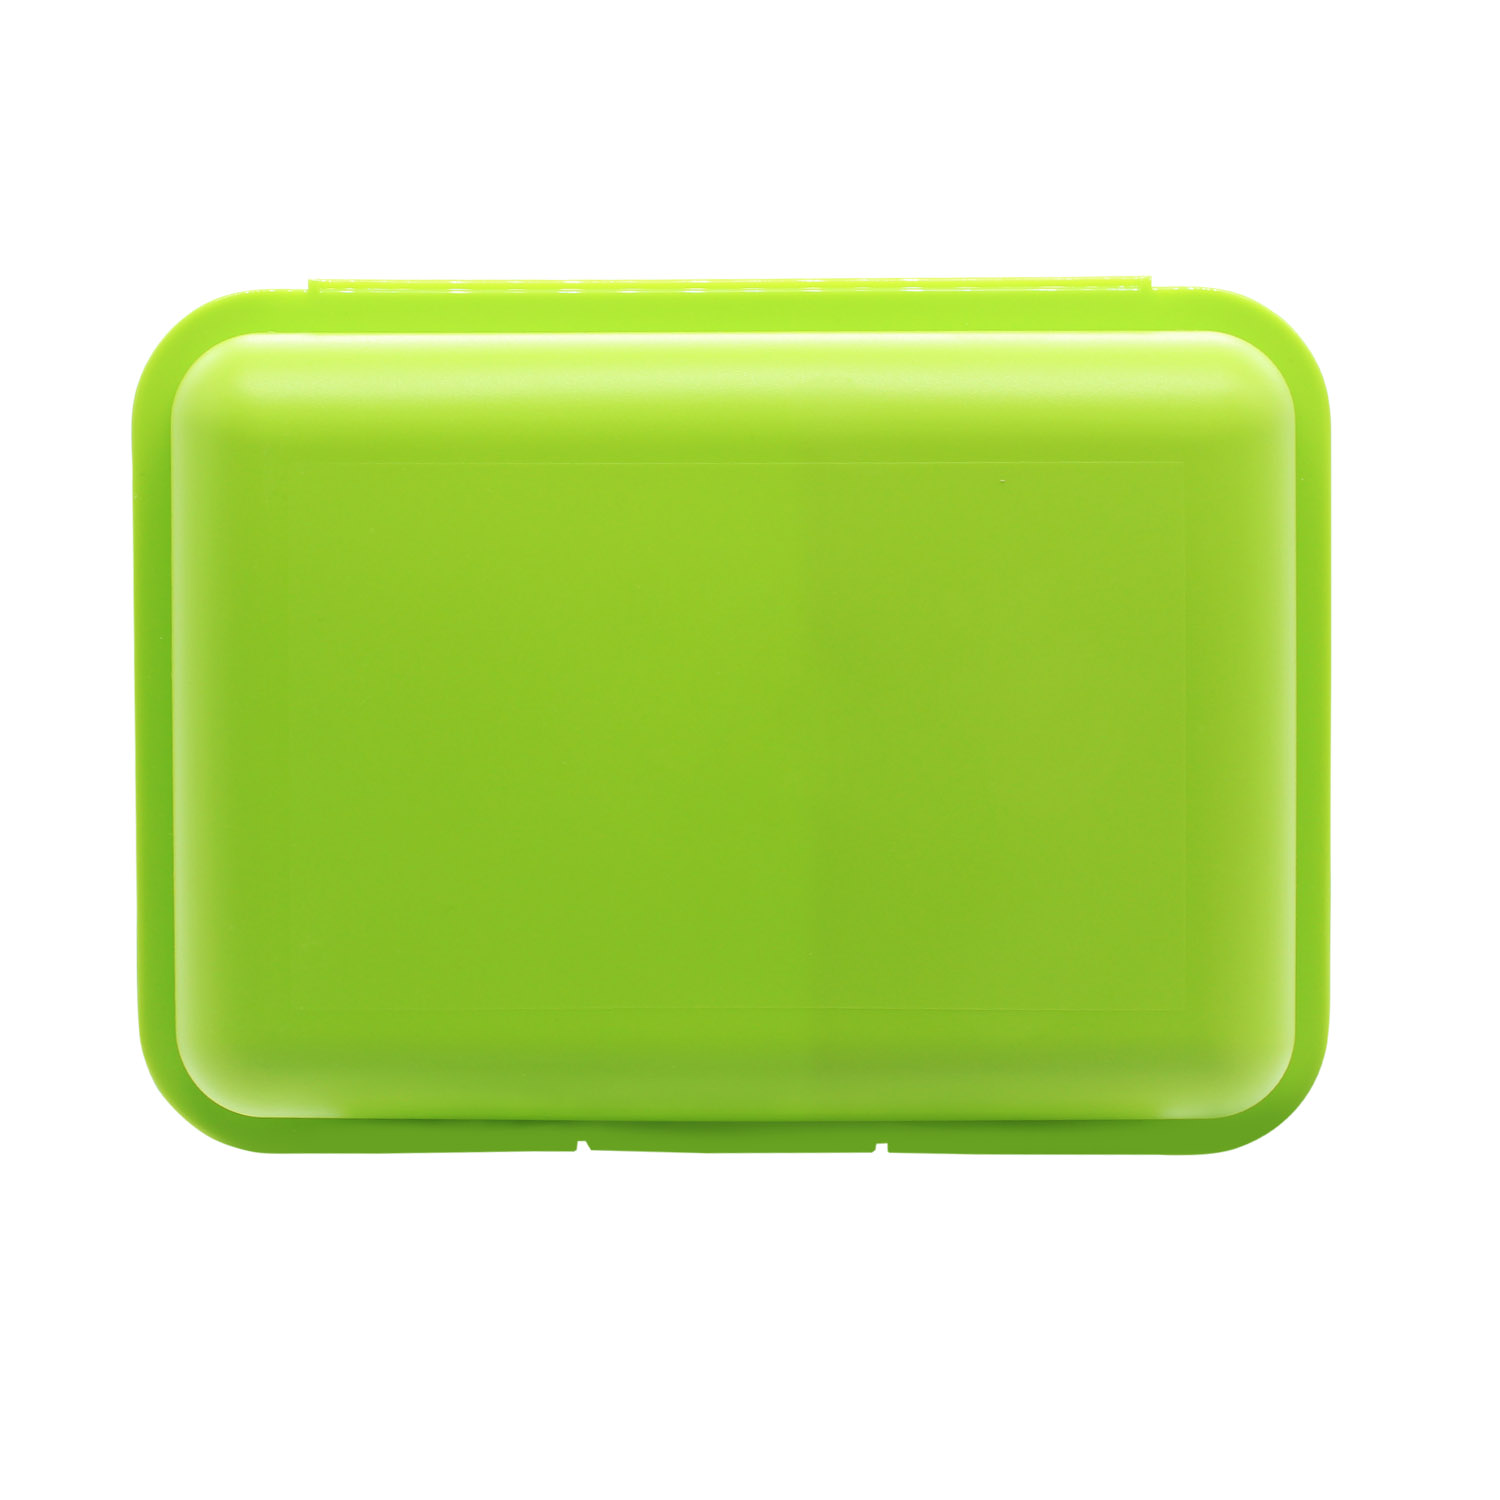 Ланч-бокс Uno Green Line с разделительной перегородкой (салатовый)